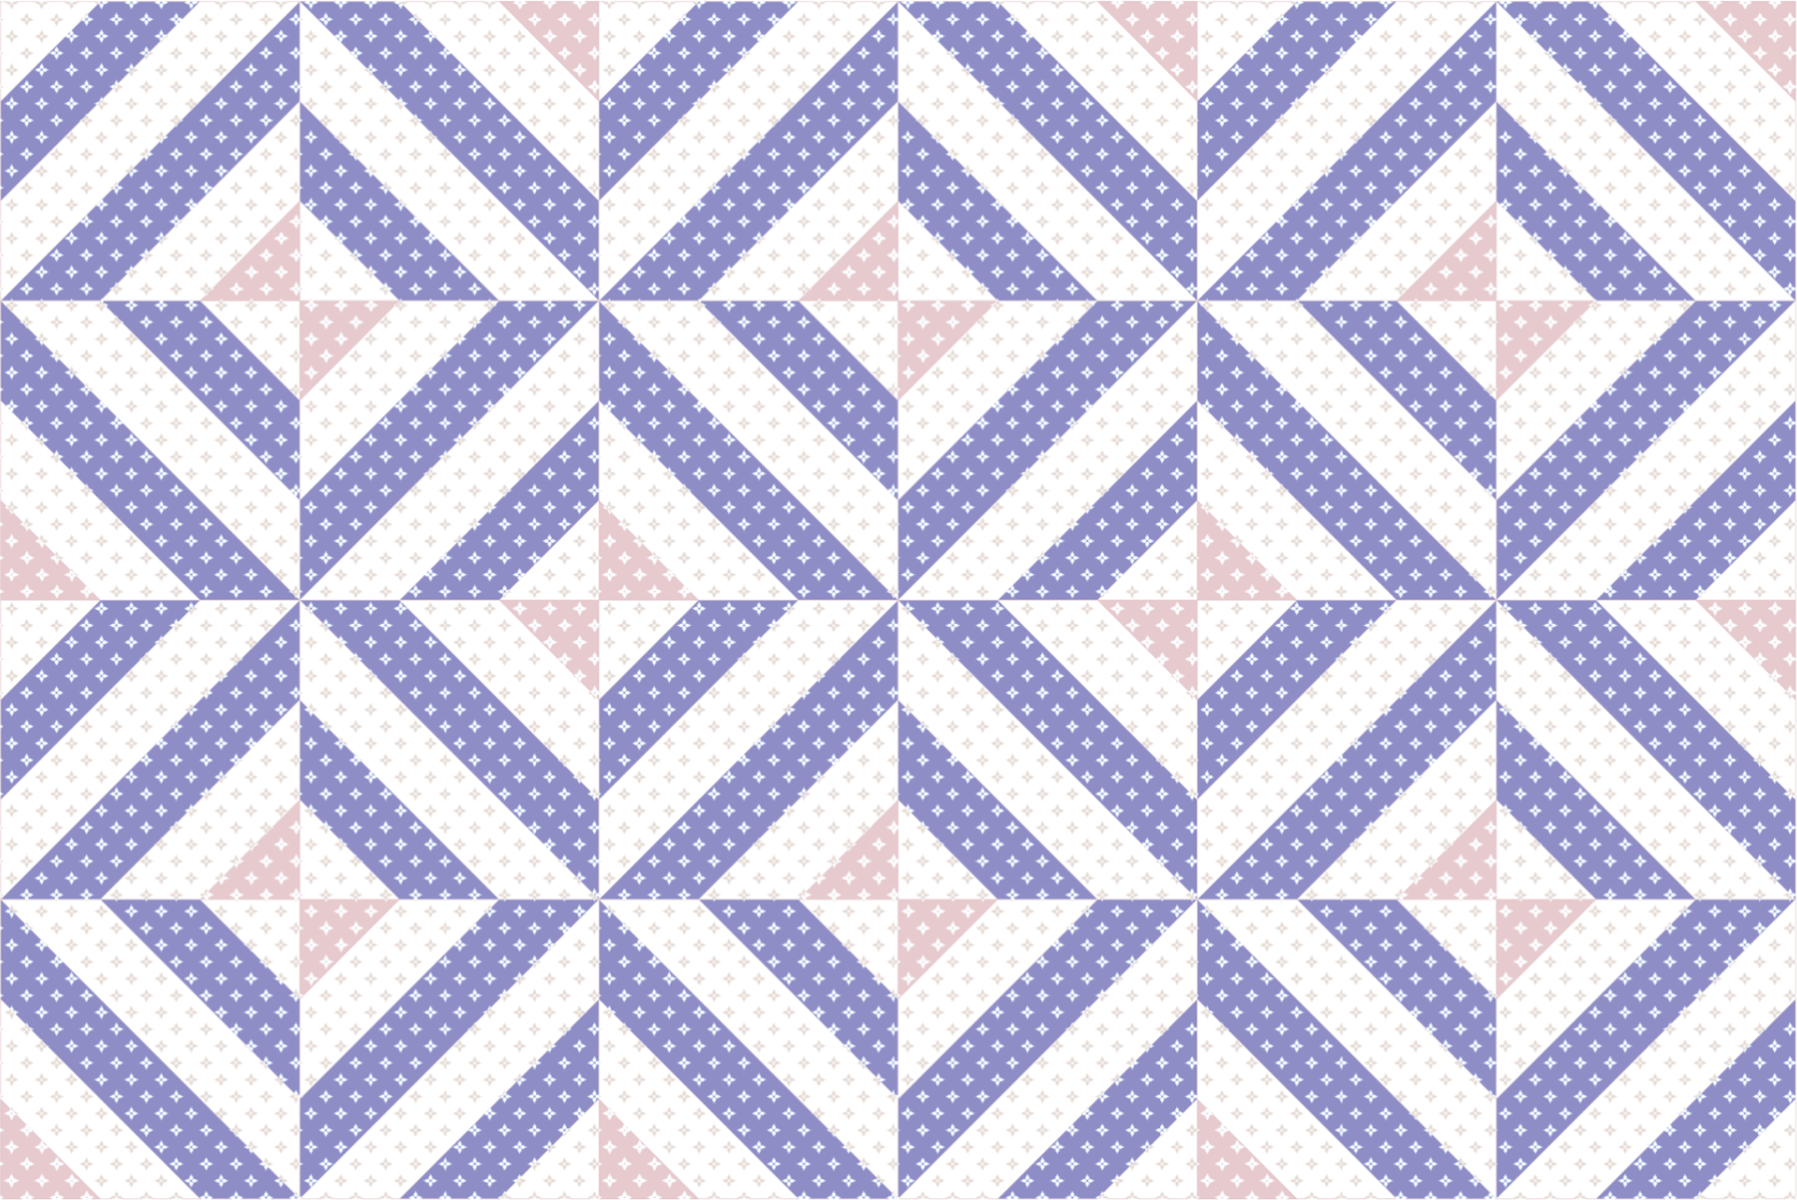 Purple Tiles for Accent Tiles